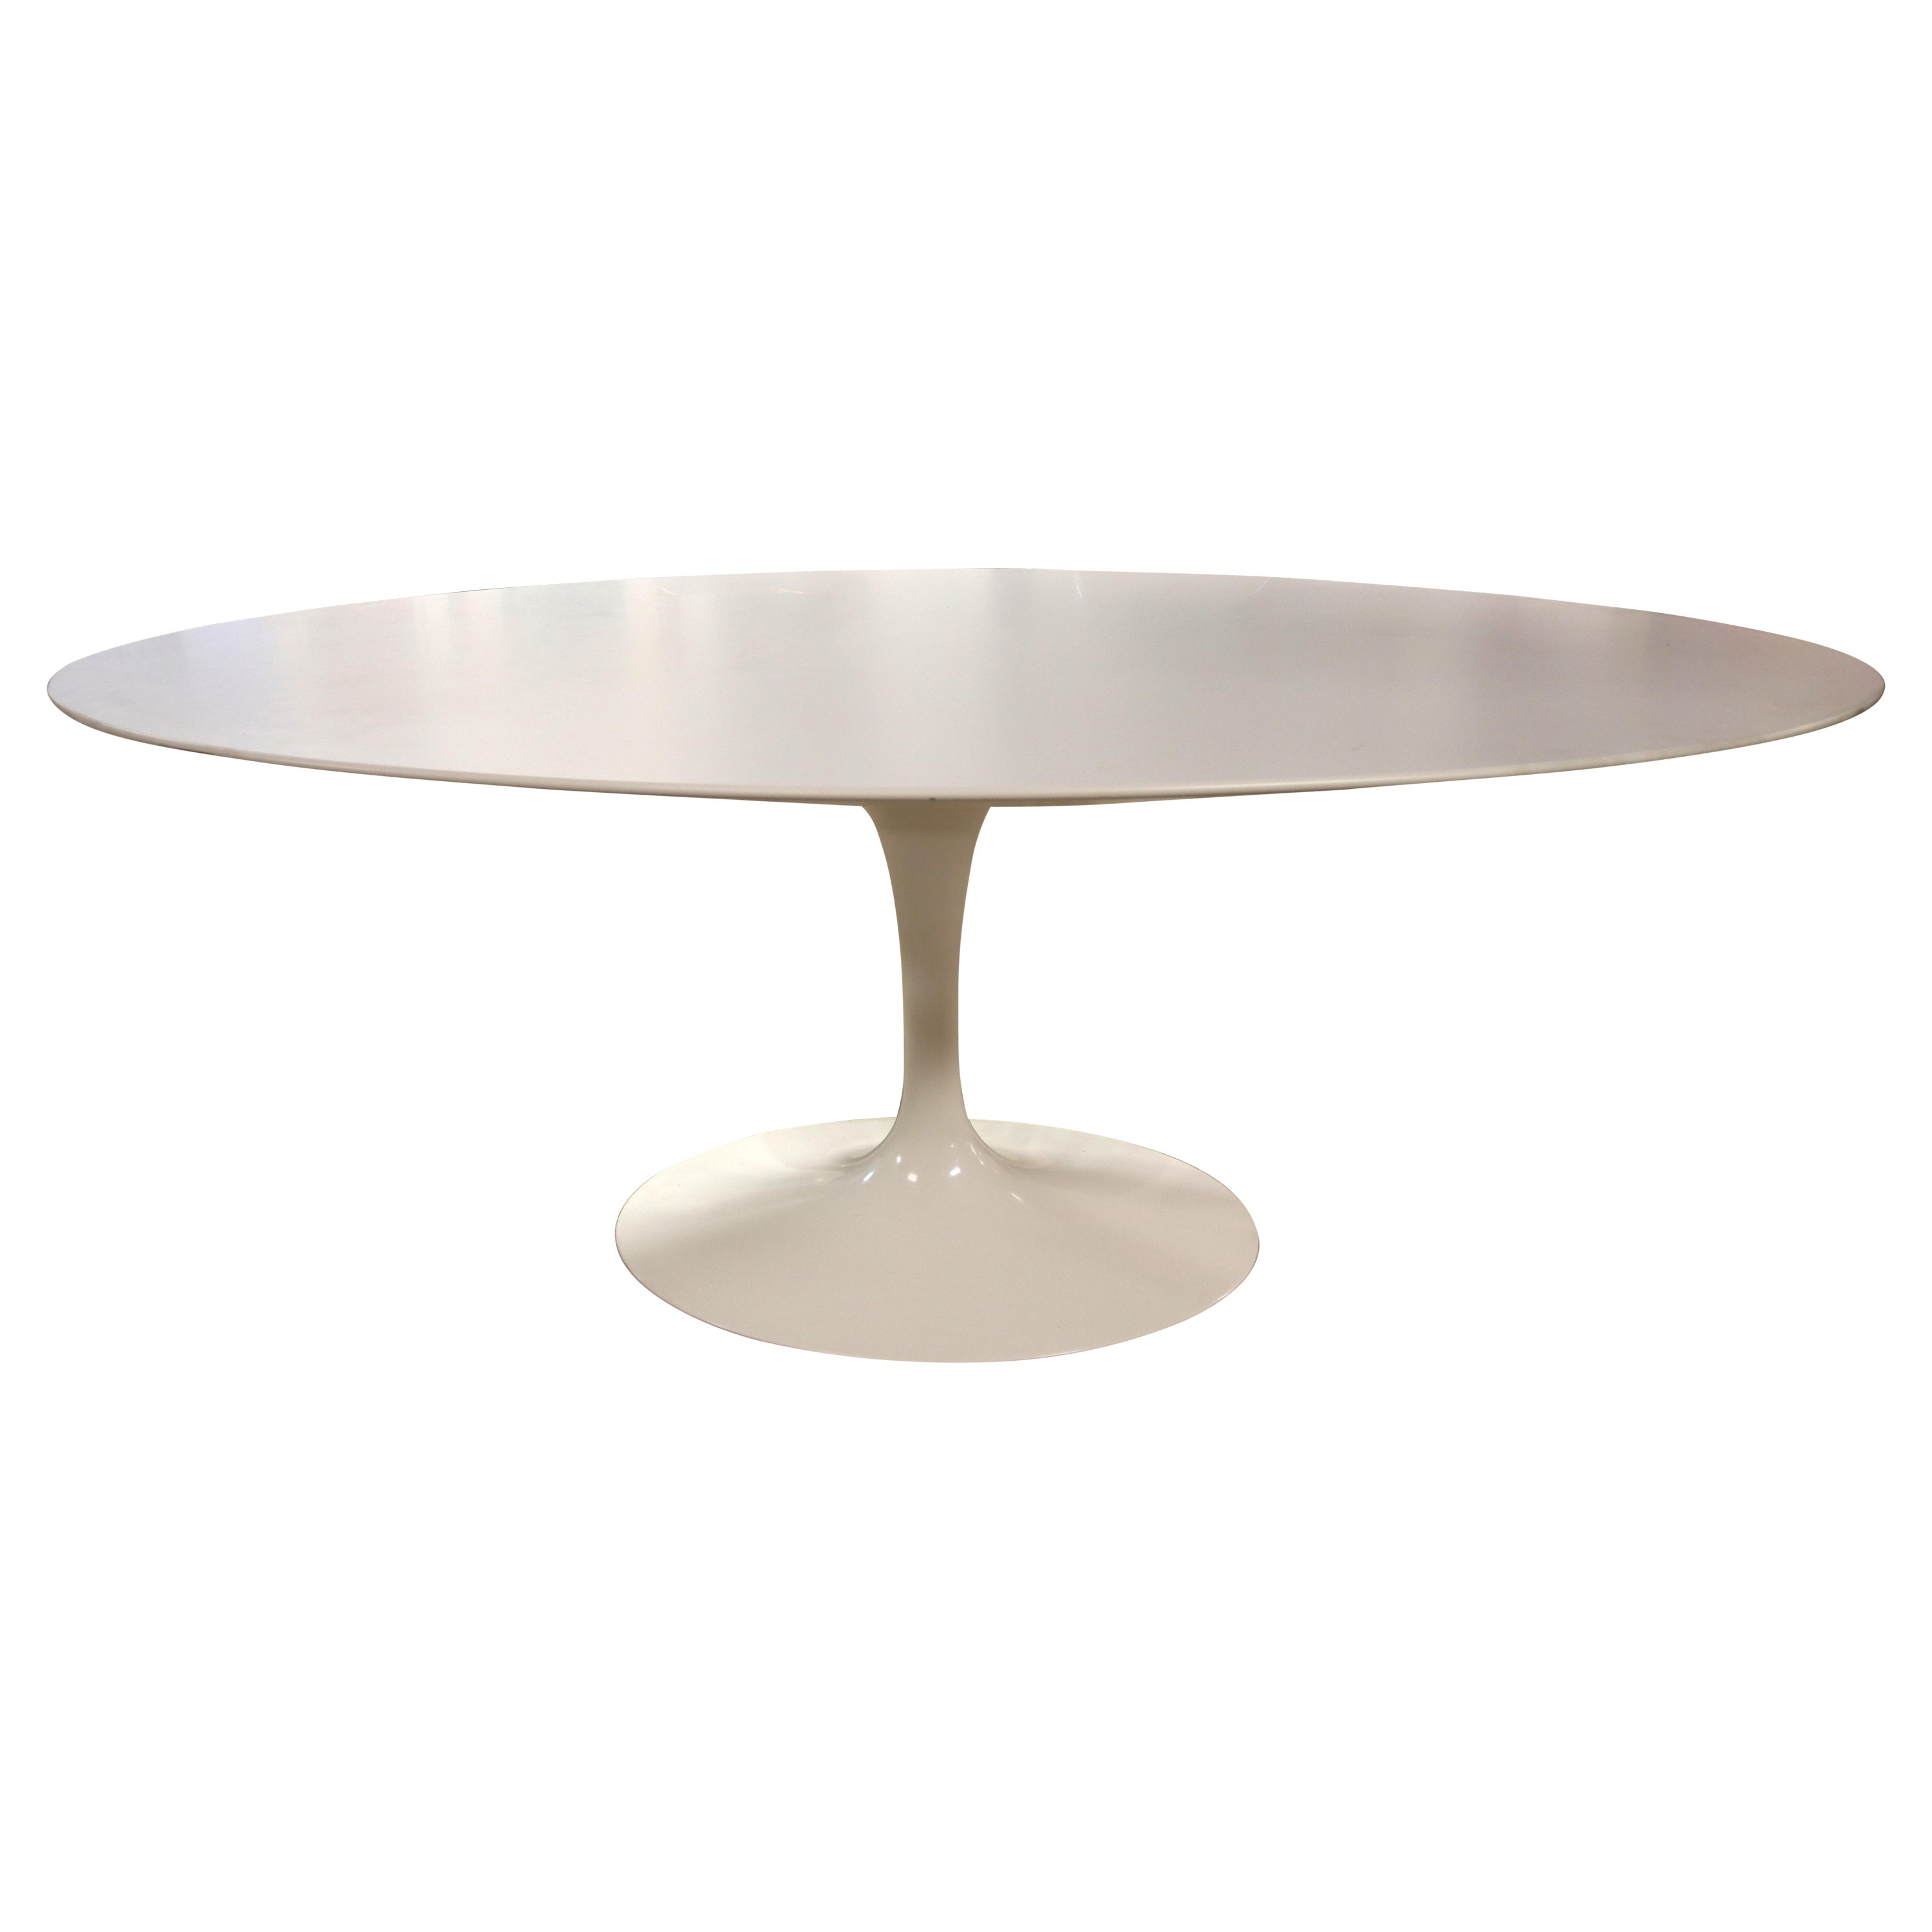 Mid-Century Modern Eero Saarinen Signed Knoll Oval Tulip Dining Table 1950s